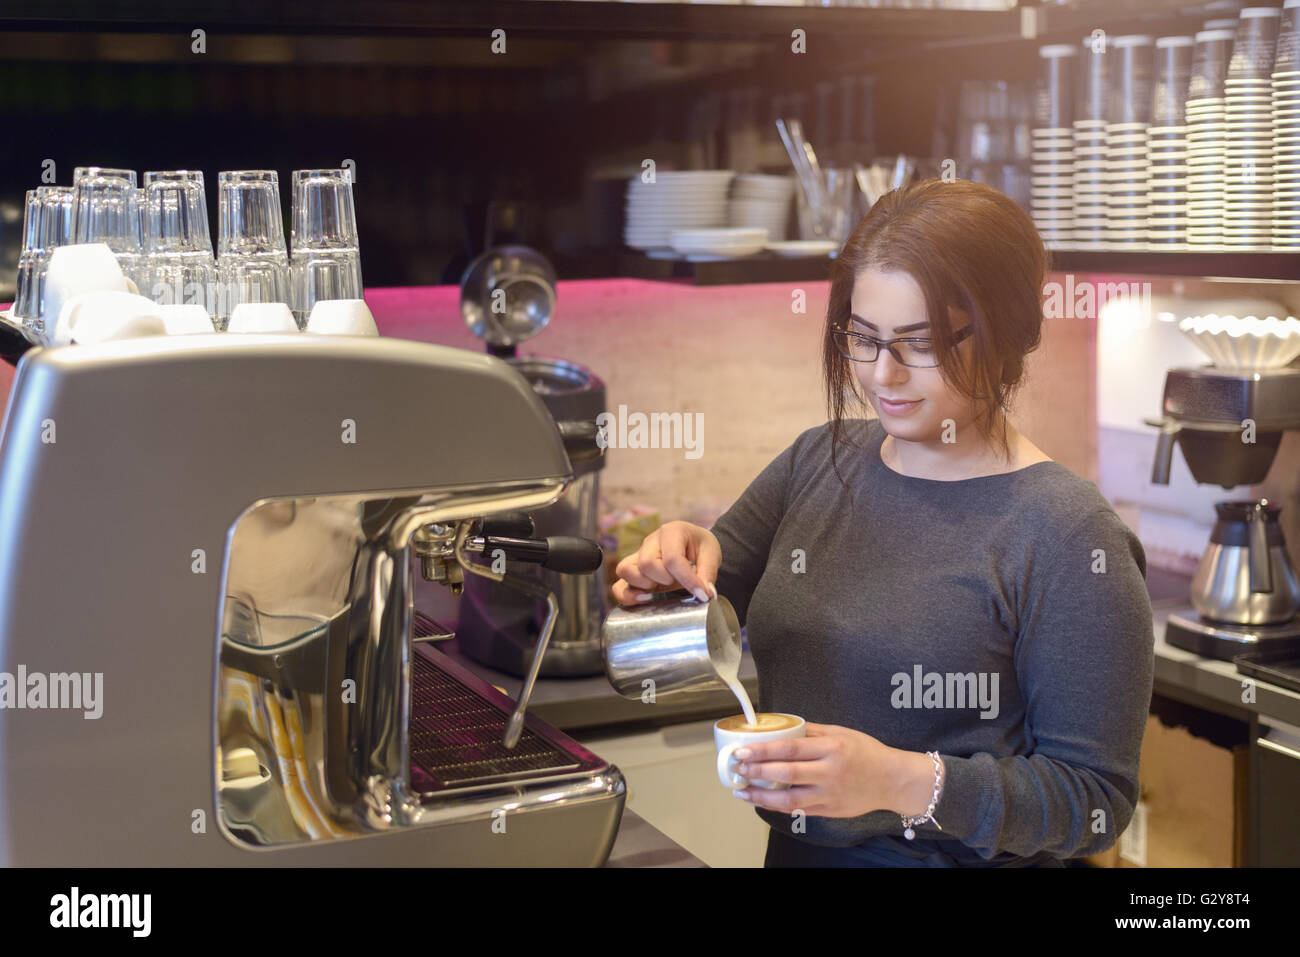 Barista femelle ou une serveuse de prendre une tasse de cappuccino dans un café ou d'une cafétéria de verser le lait moussé chaud dans le café Banque D'Images